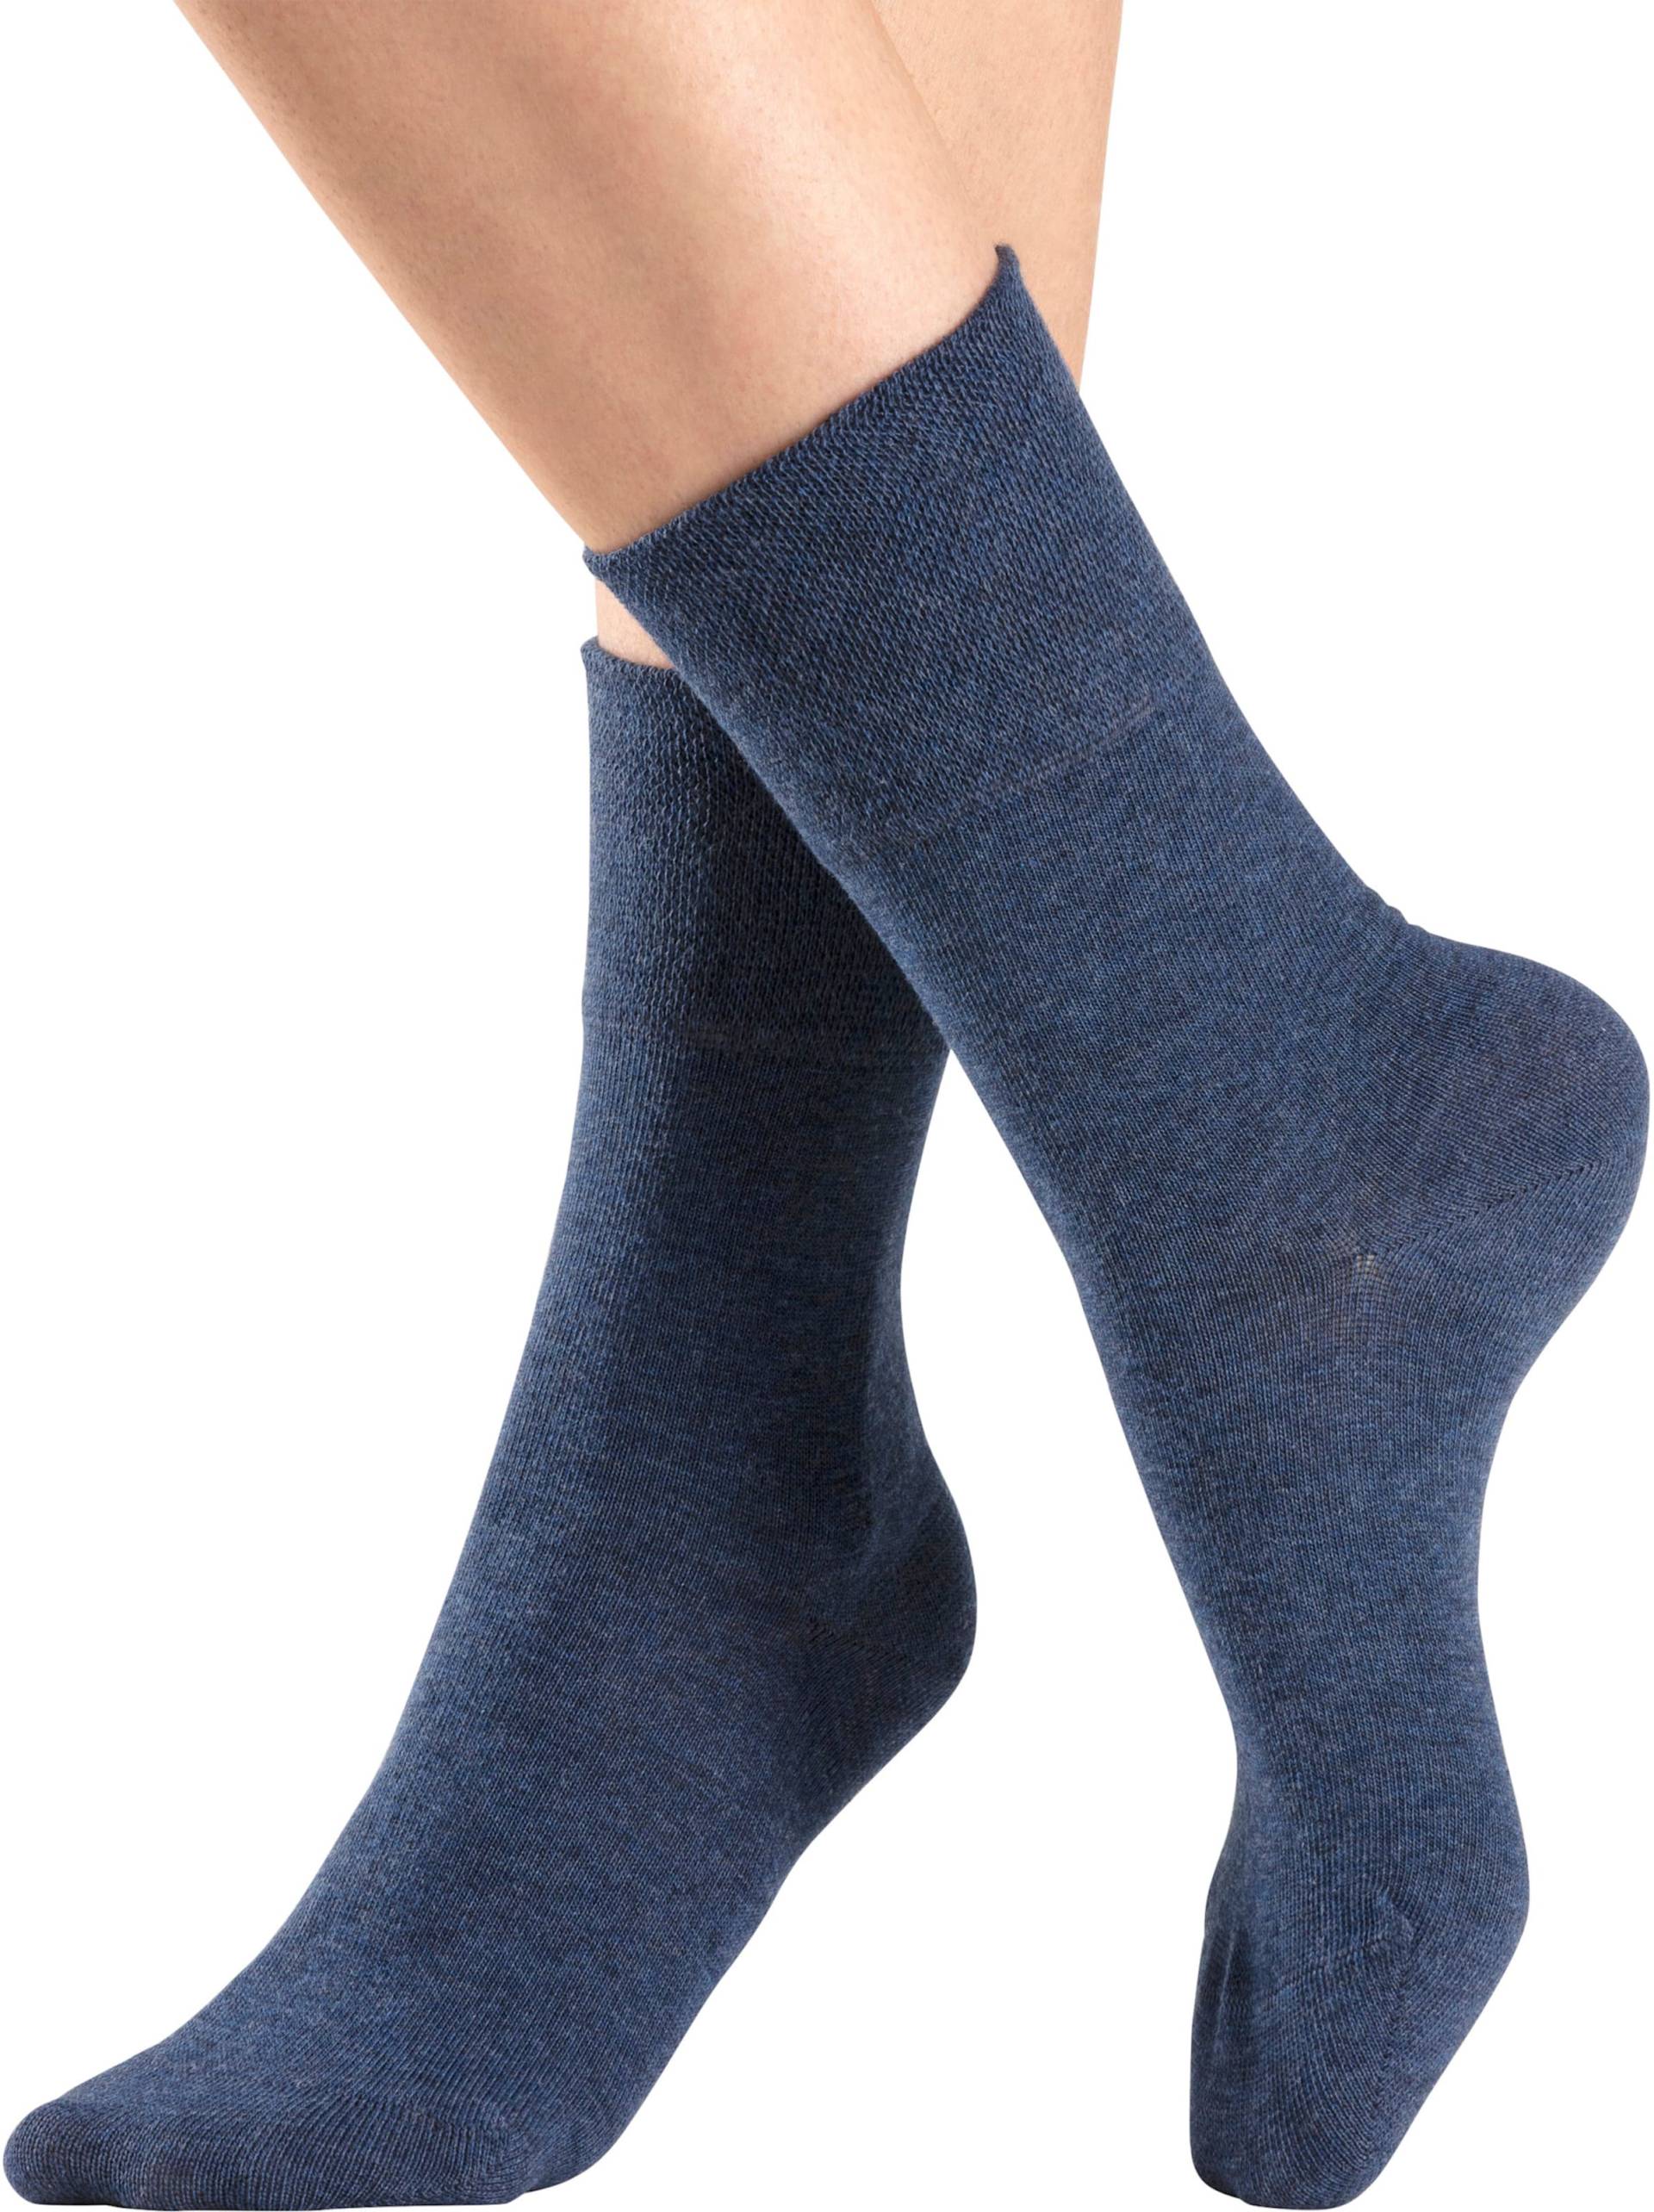 Socken in 2x jeans, 2x schwarz, 2x grau-meliert von H.I.S